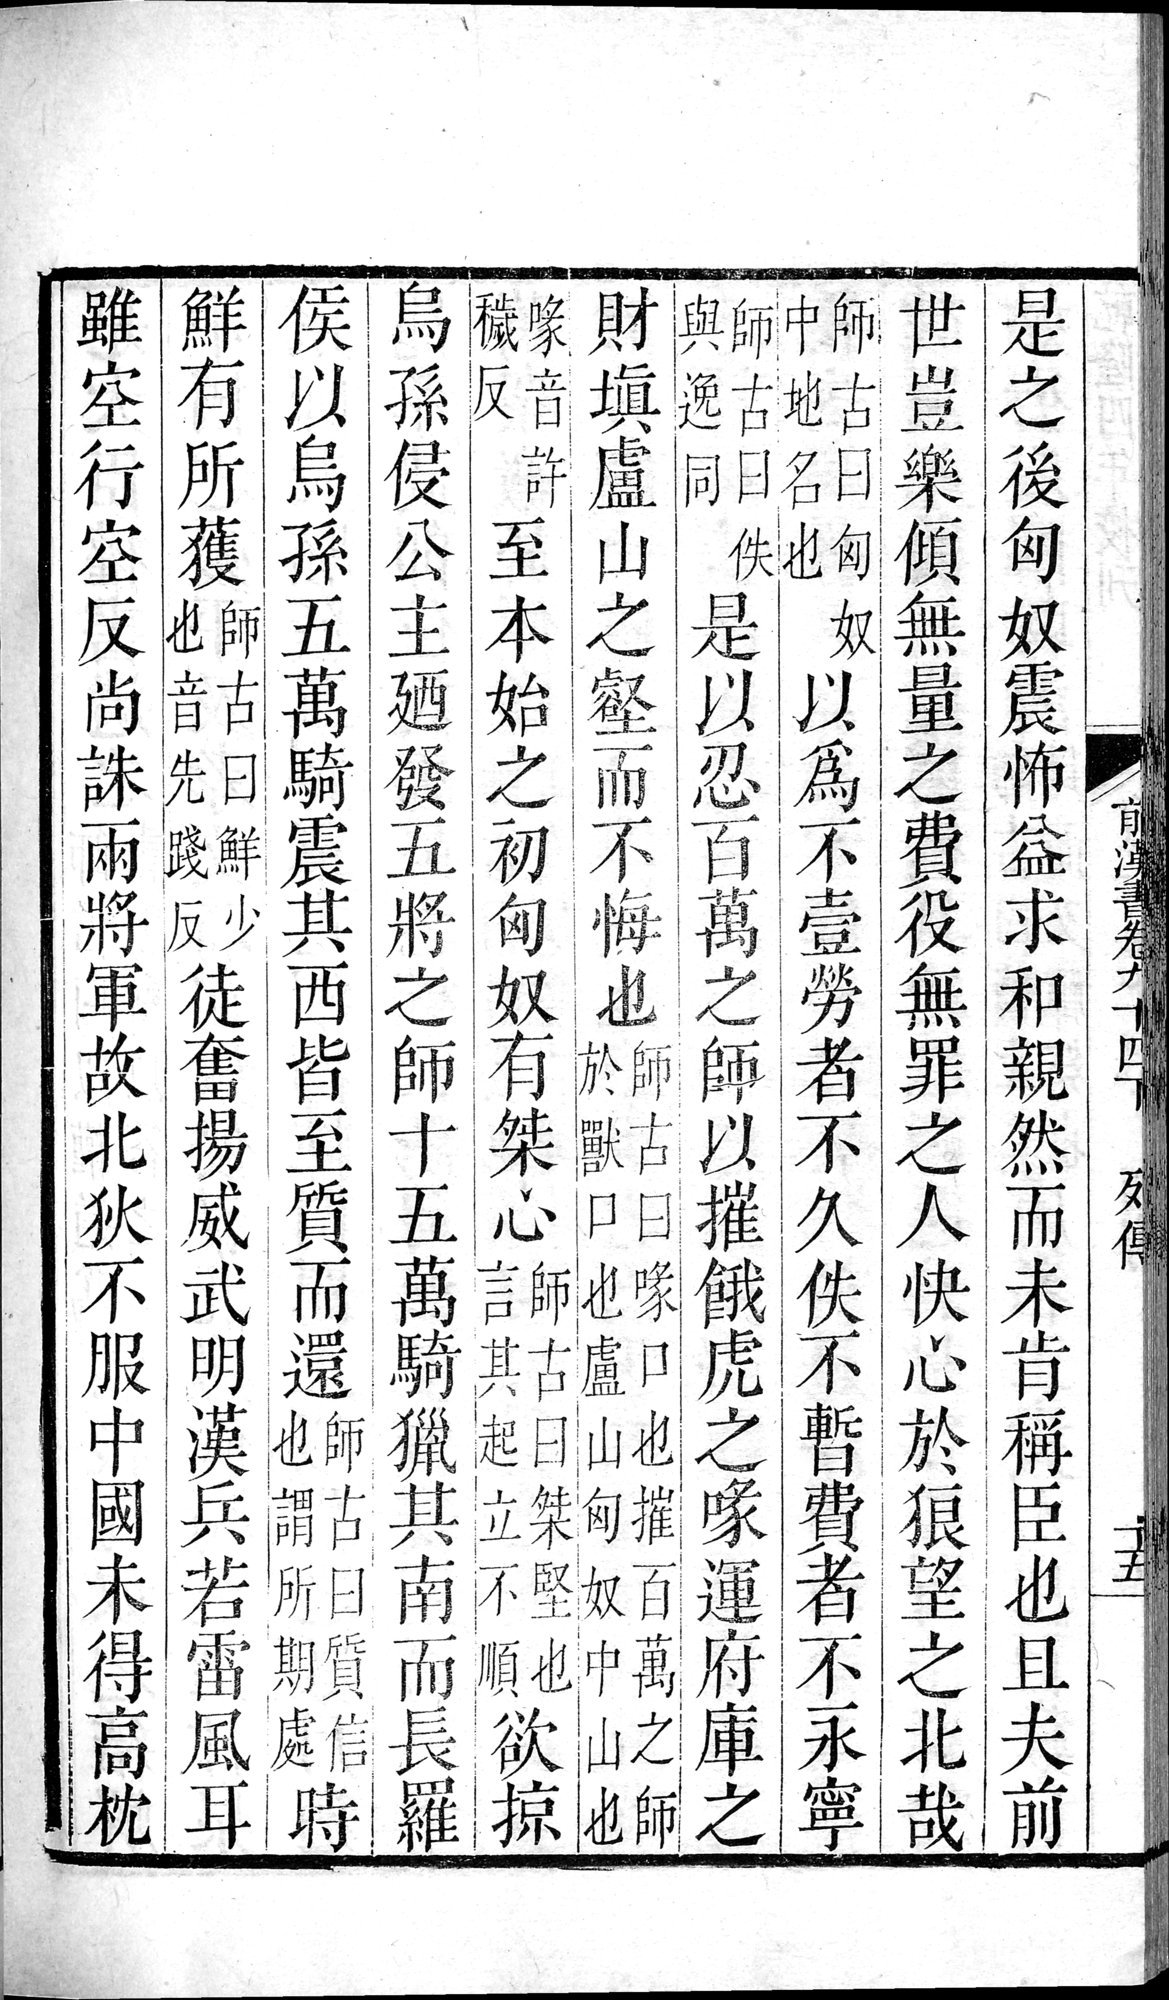 前漢書 : vol.94 bottom / Page 30 (Grayscale High Resolution Image)